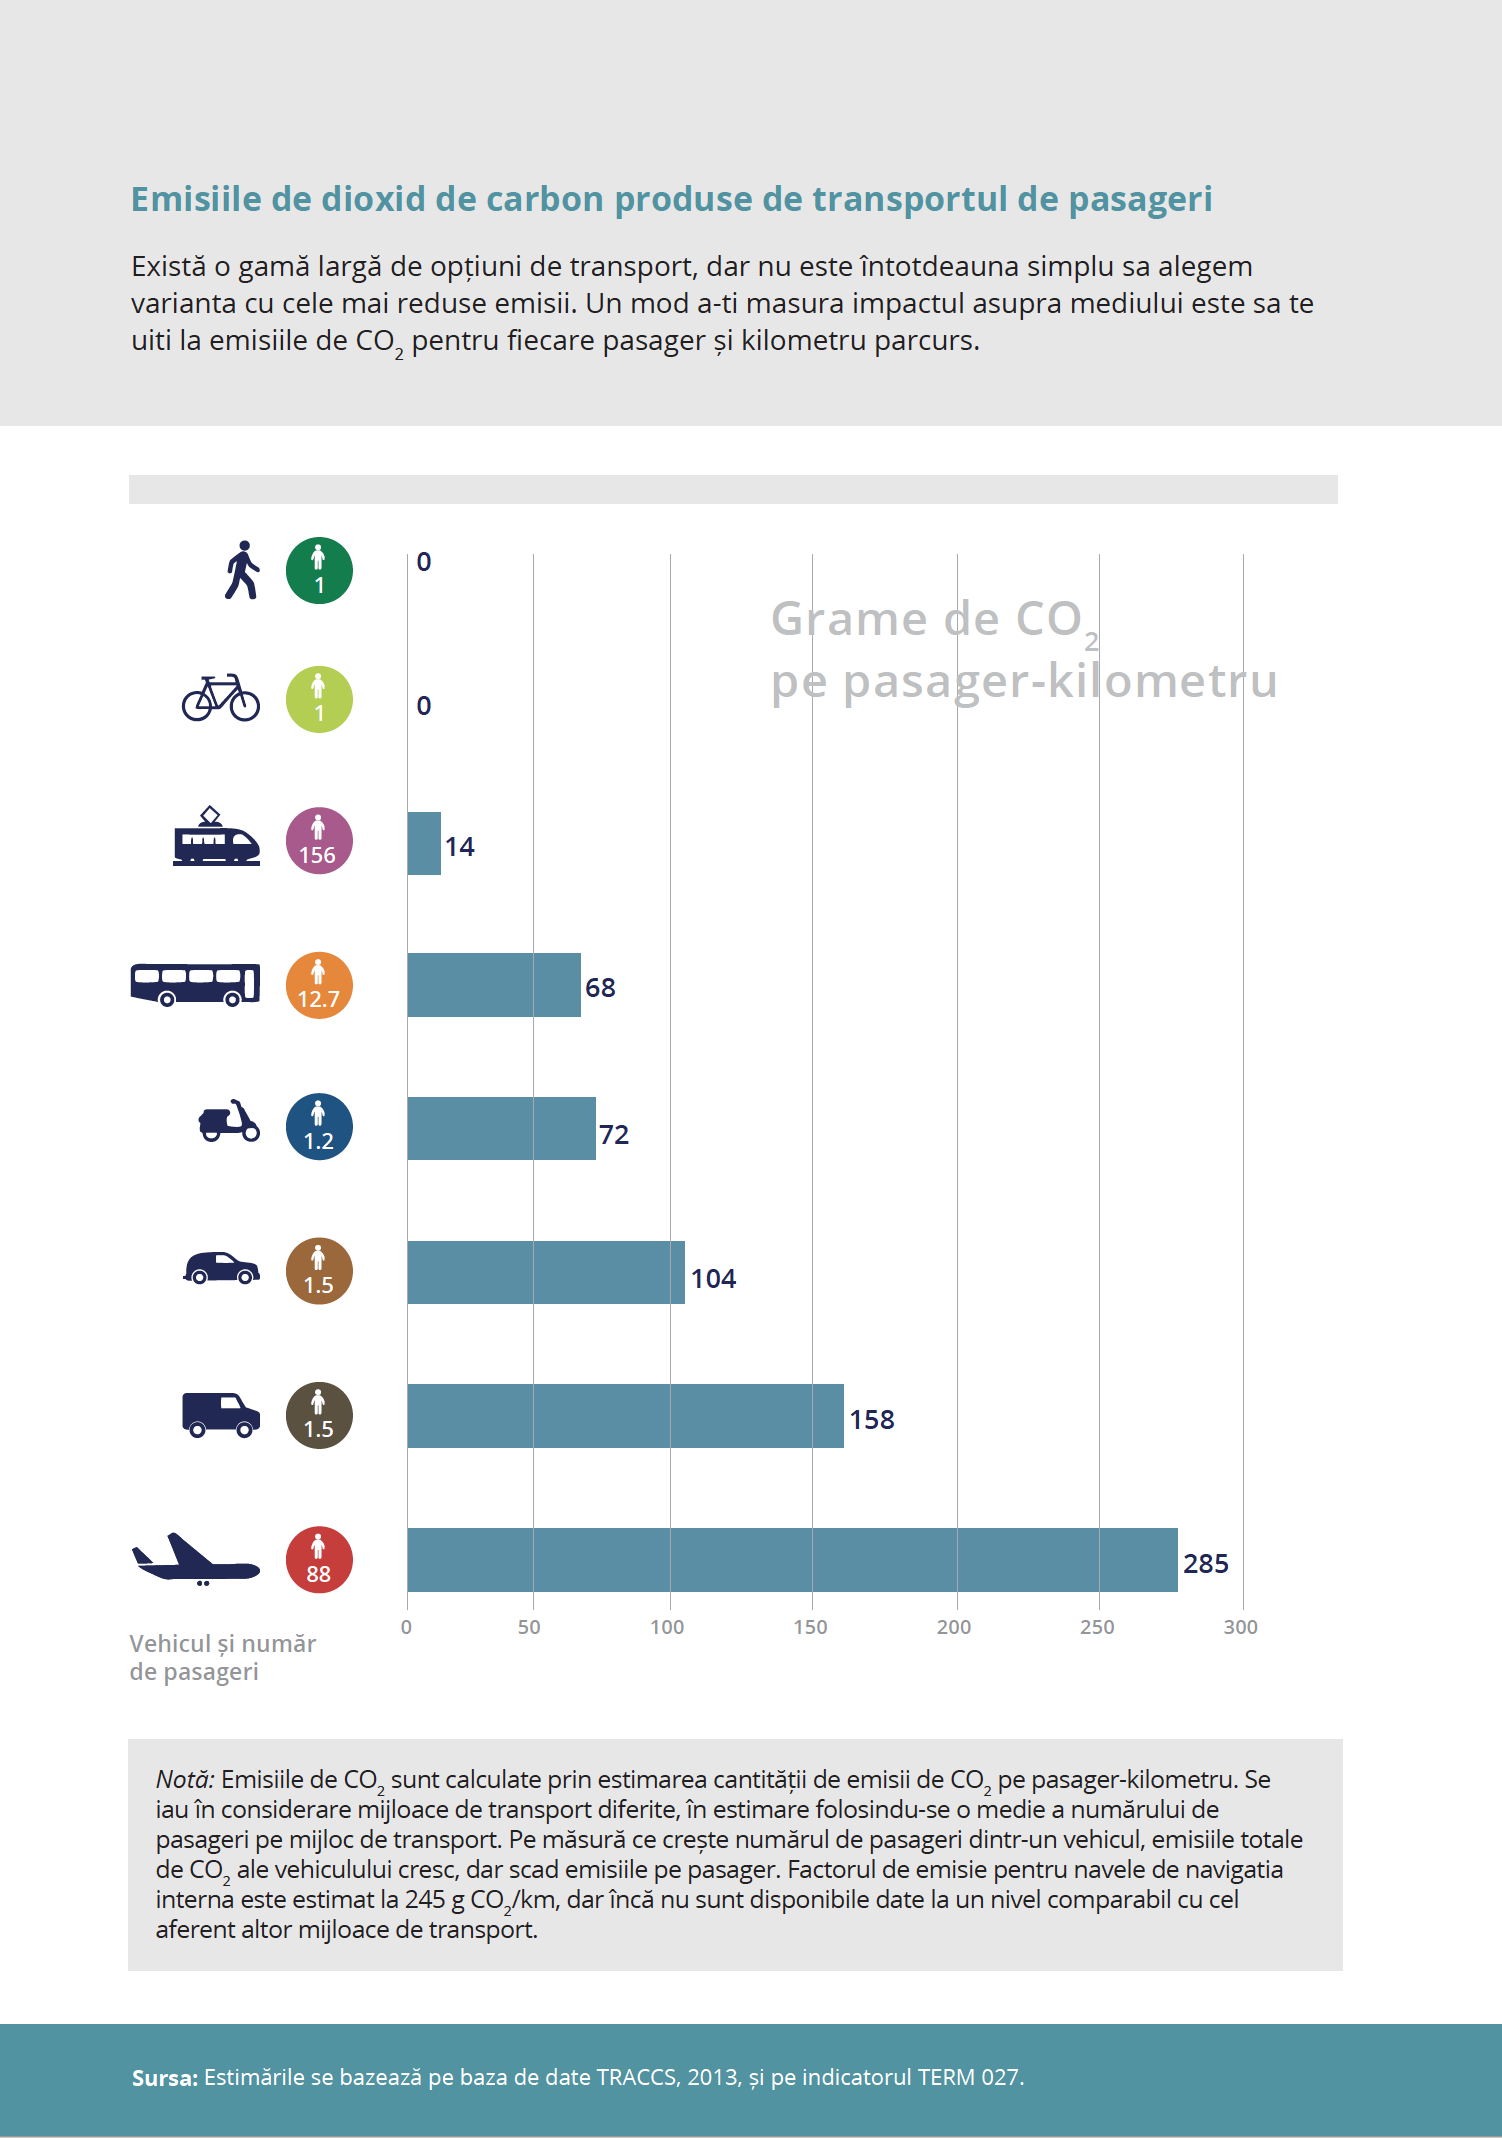 Emisiile de dioxid de carbon produse de transportul de pasageri